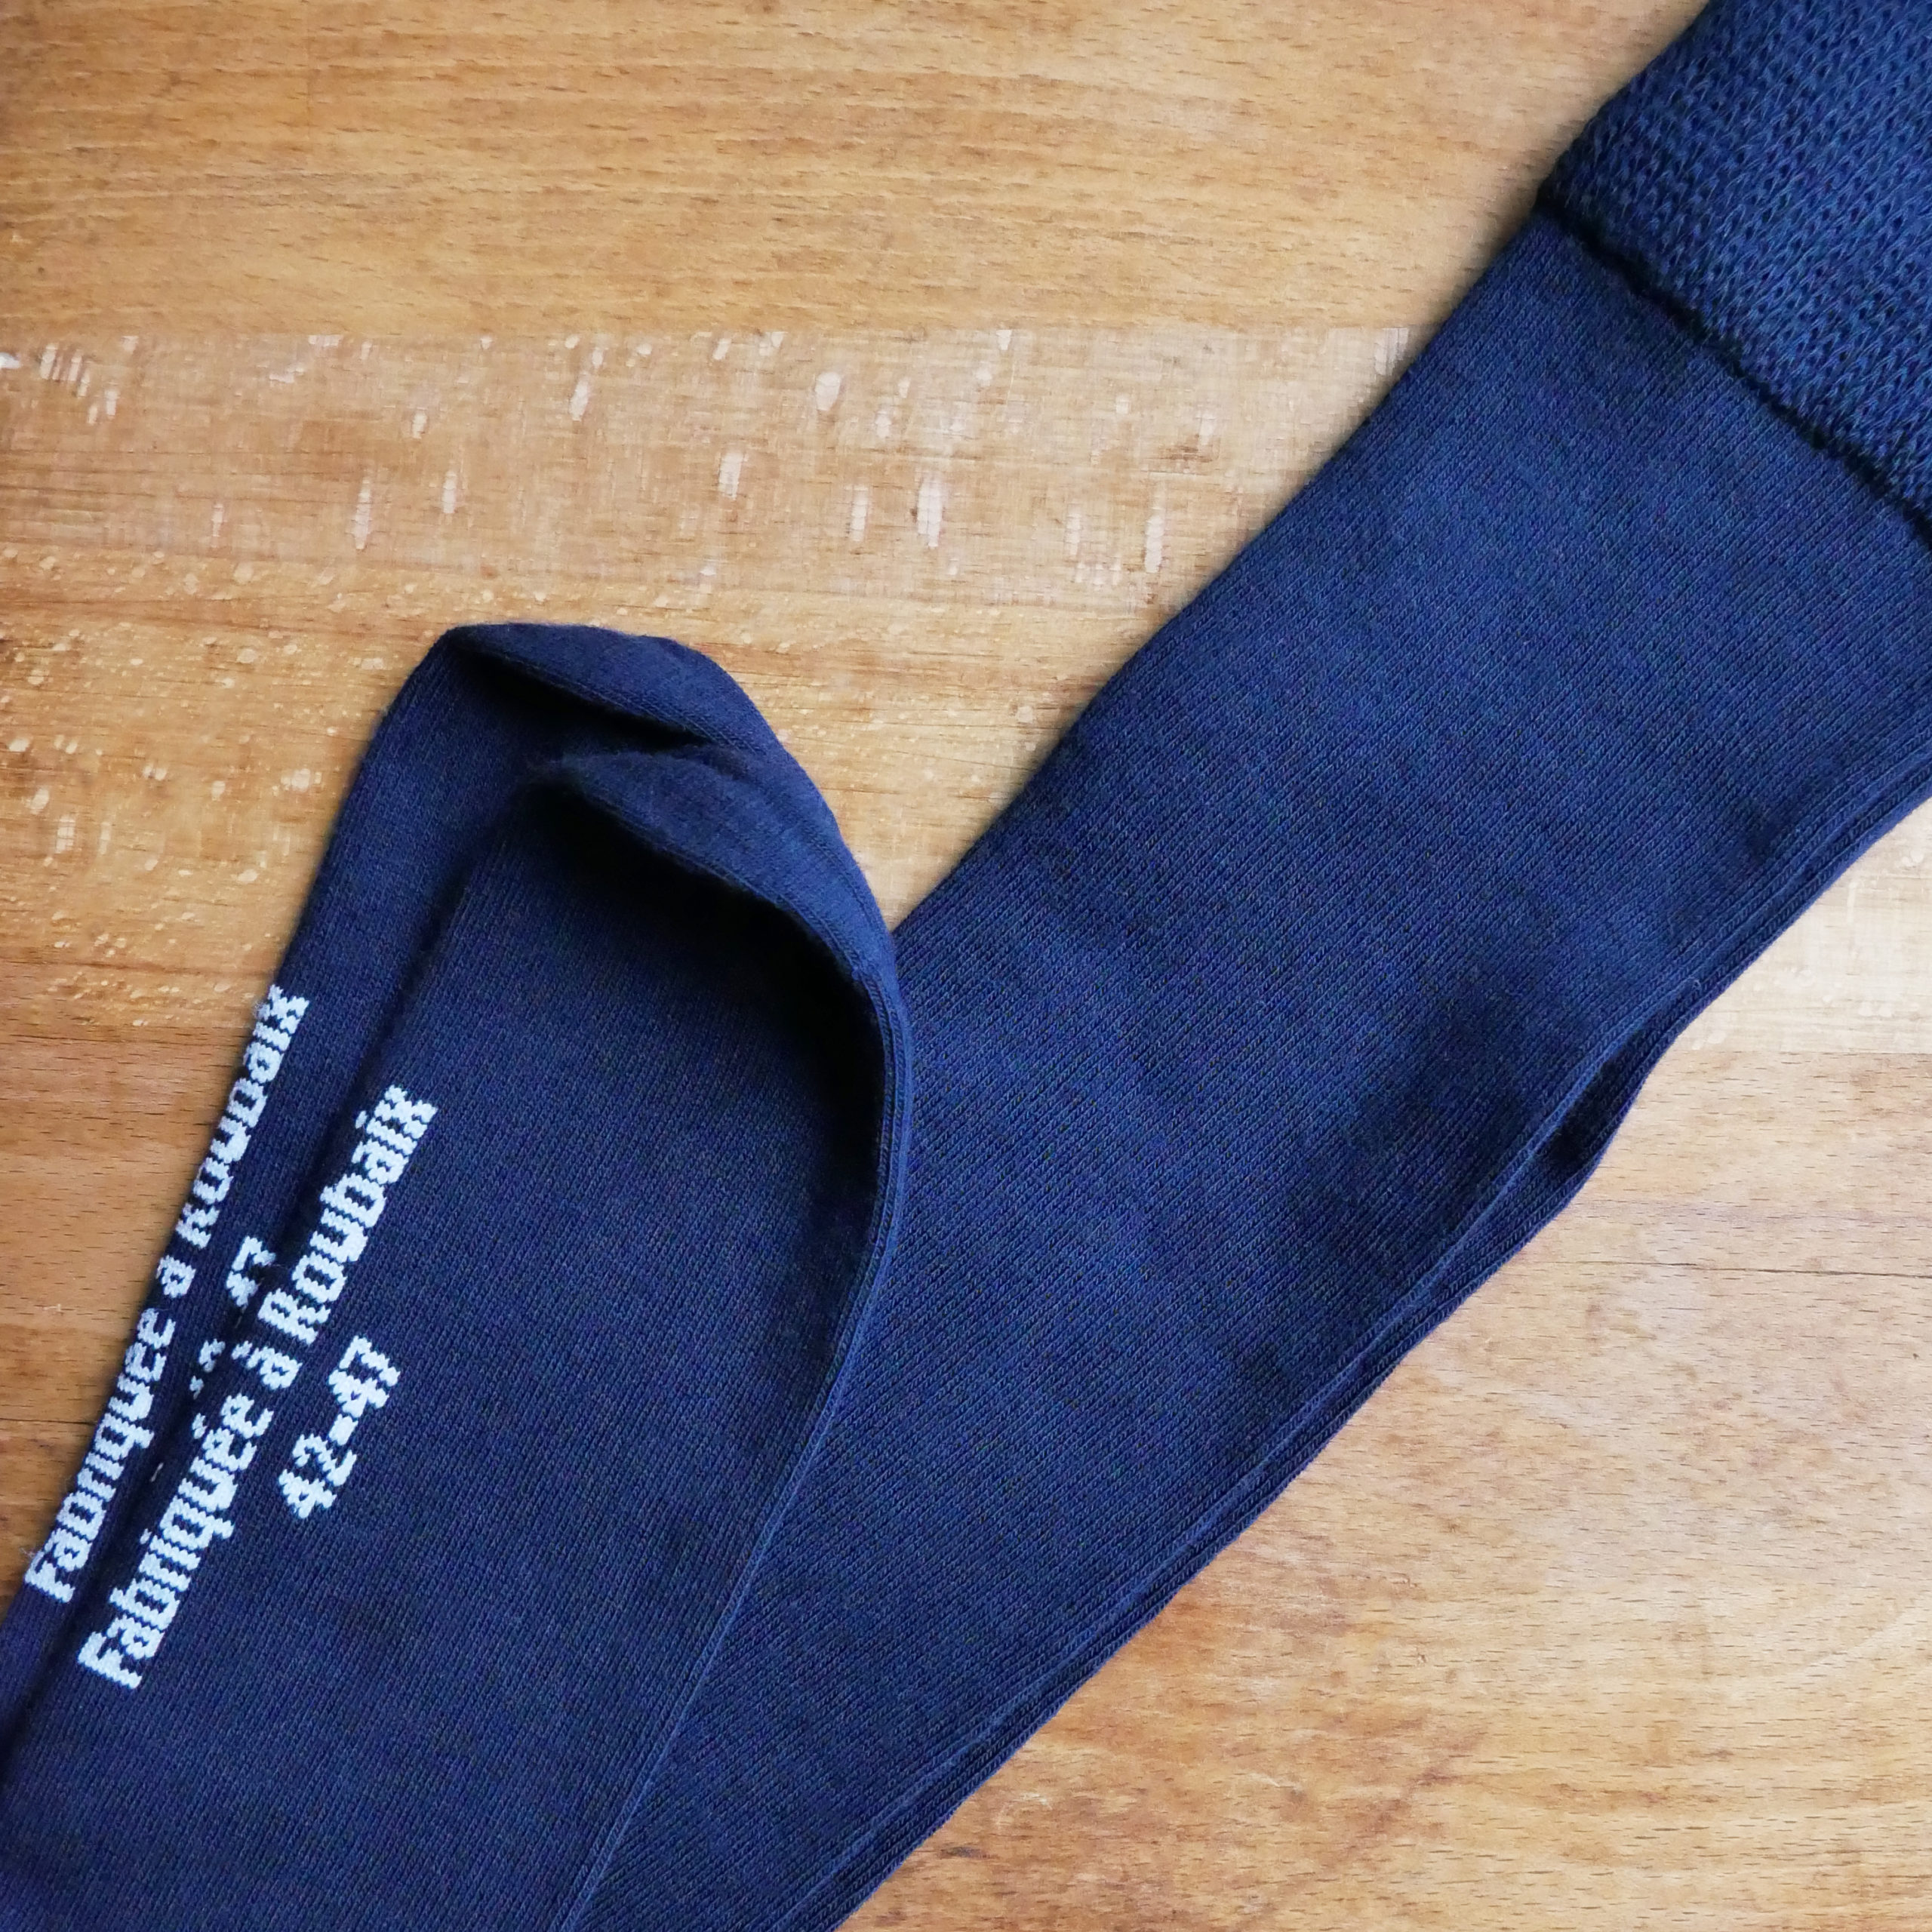 Chaussettes laine mérinos intérieur coton T39/42 / T43/46 – Do you